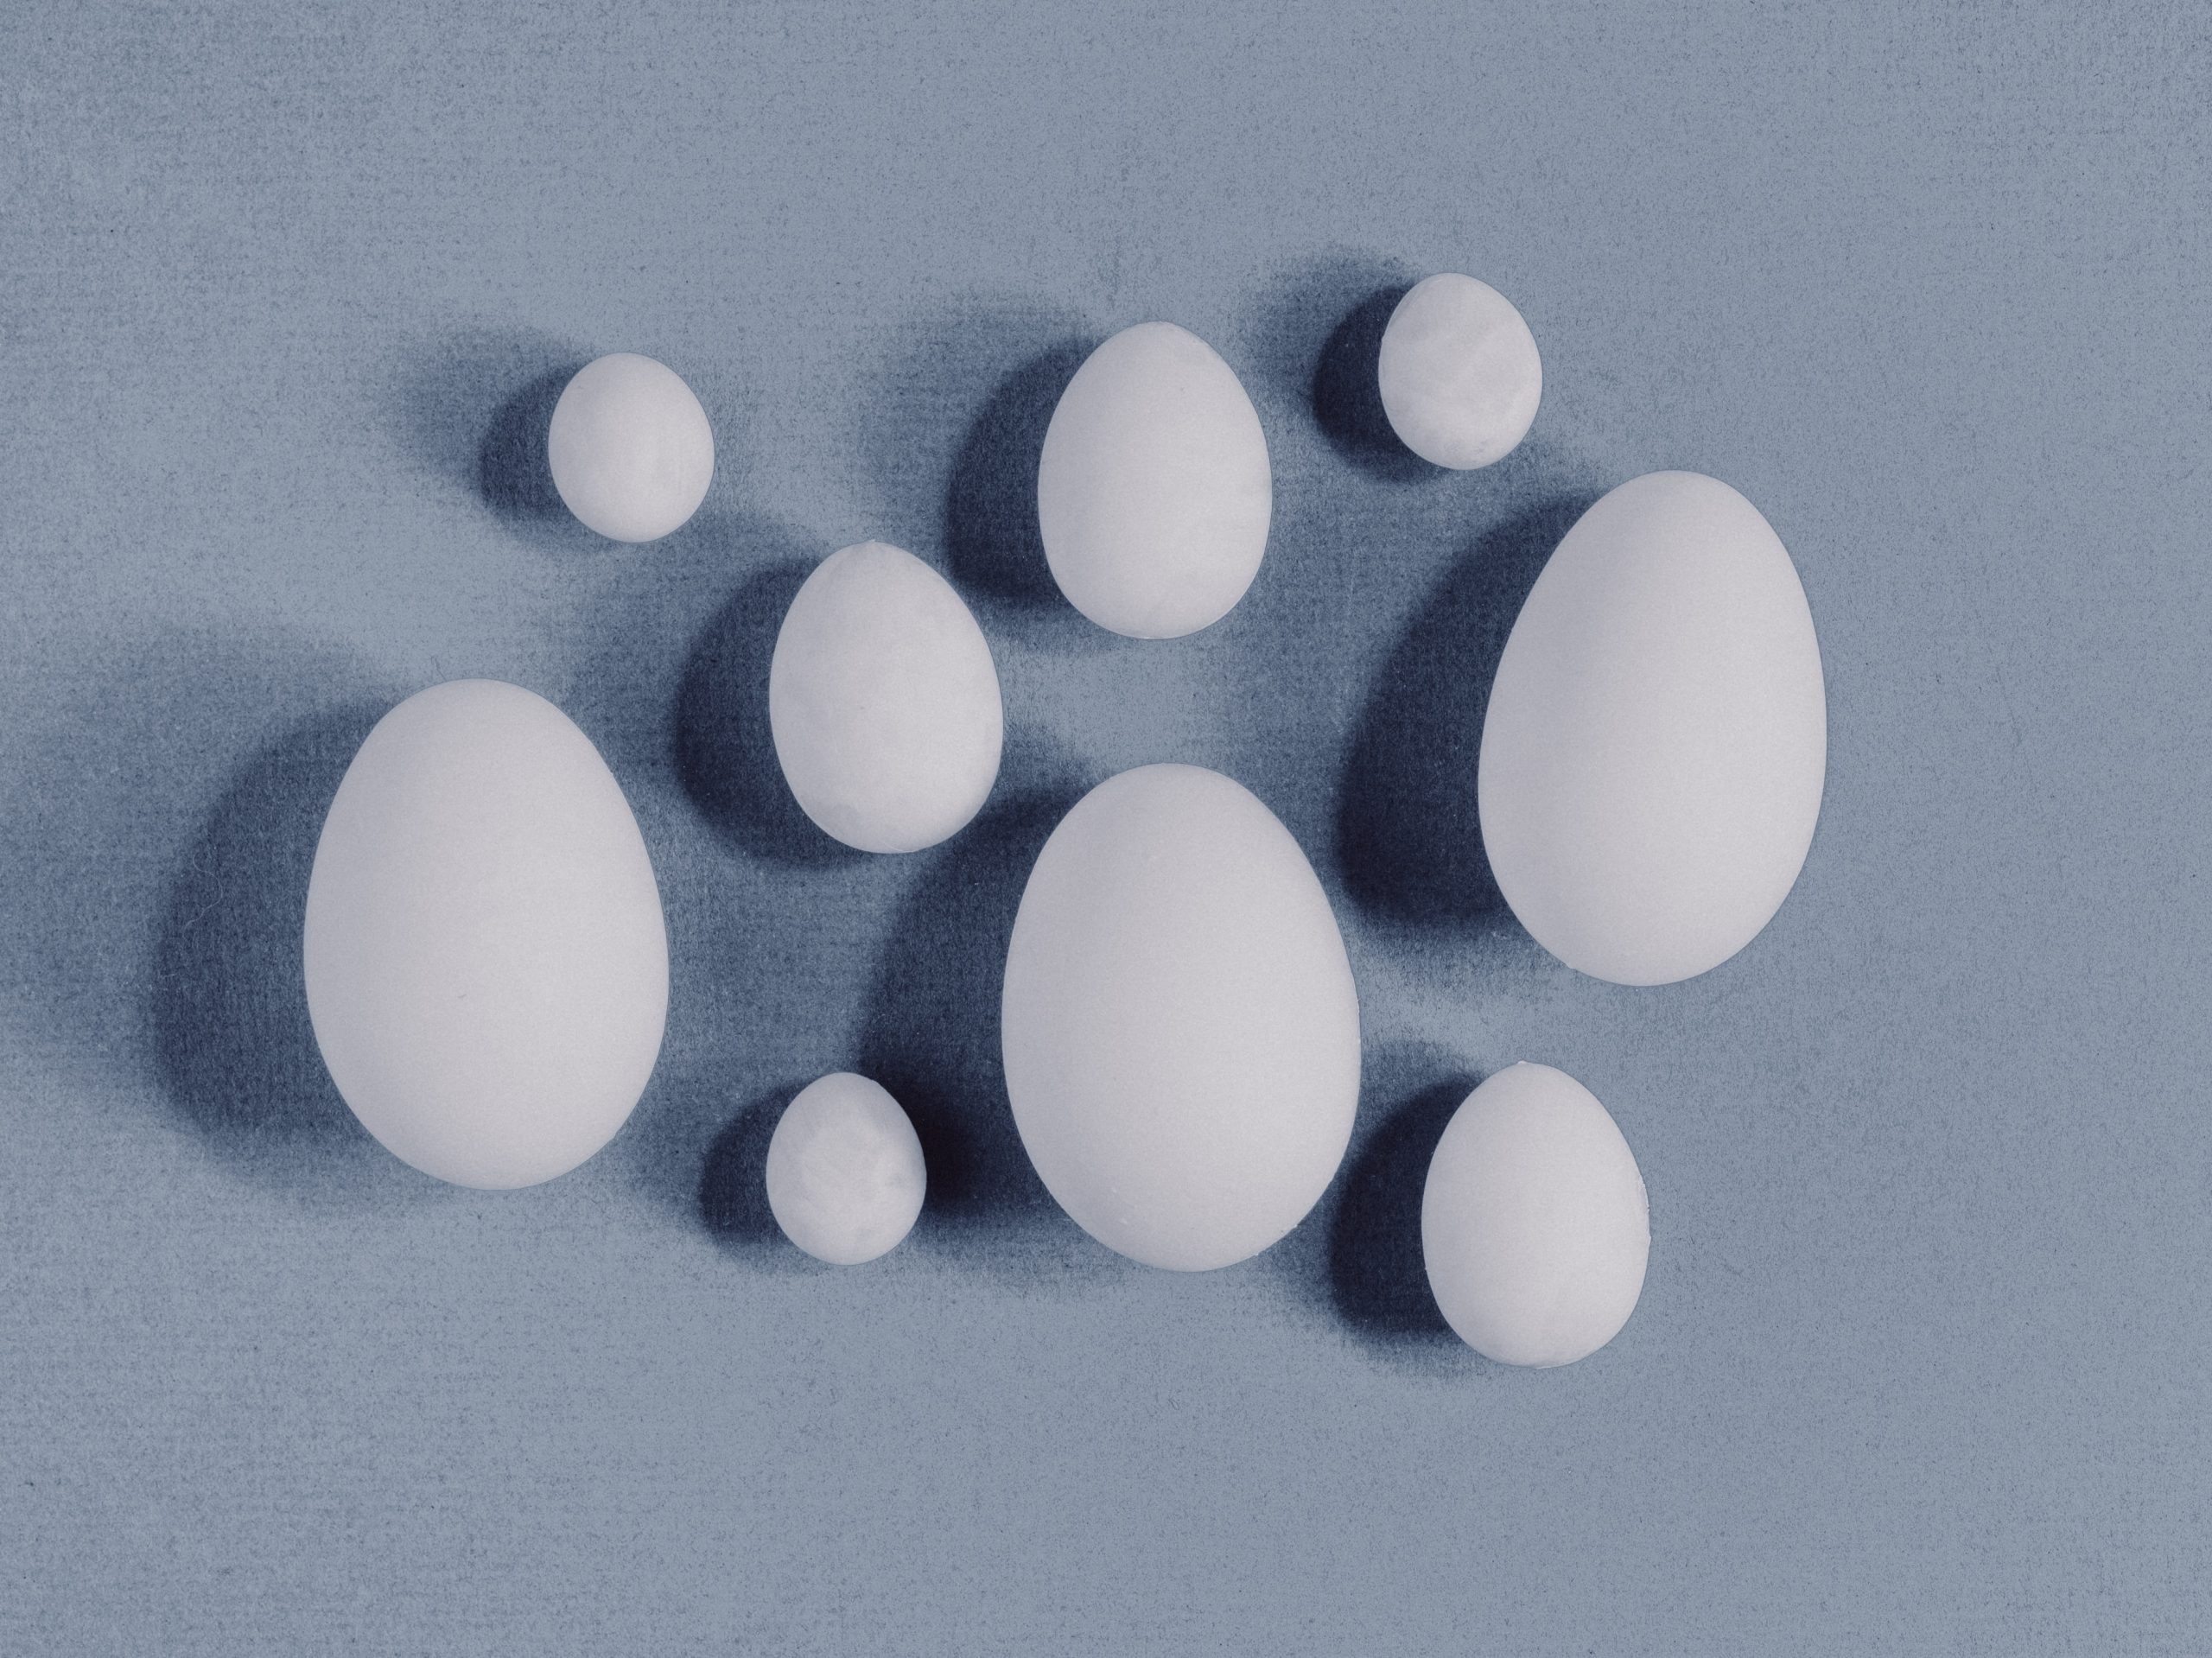 stock photo of eggs